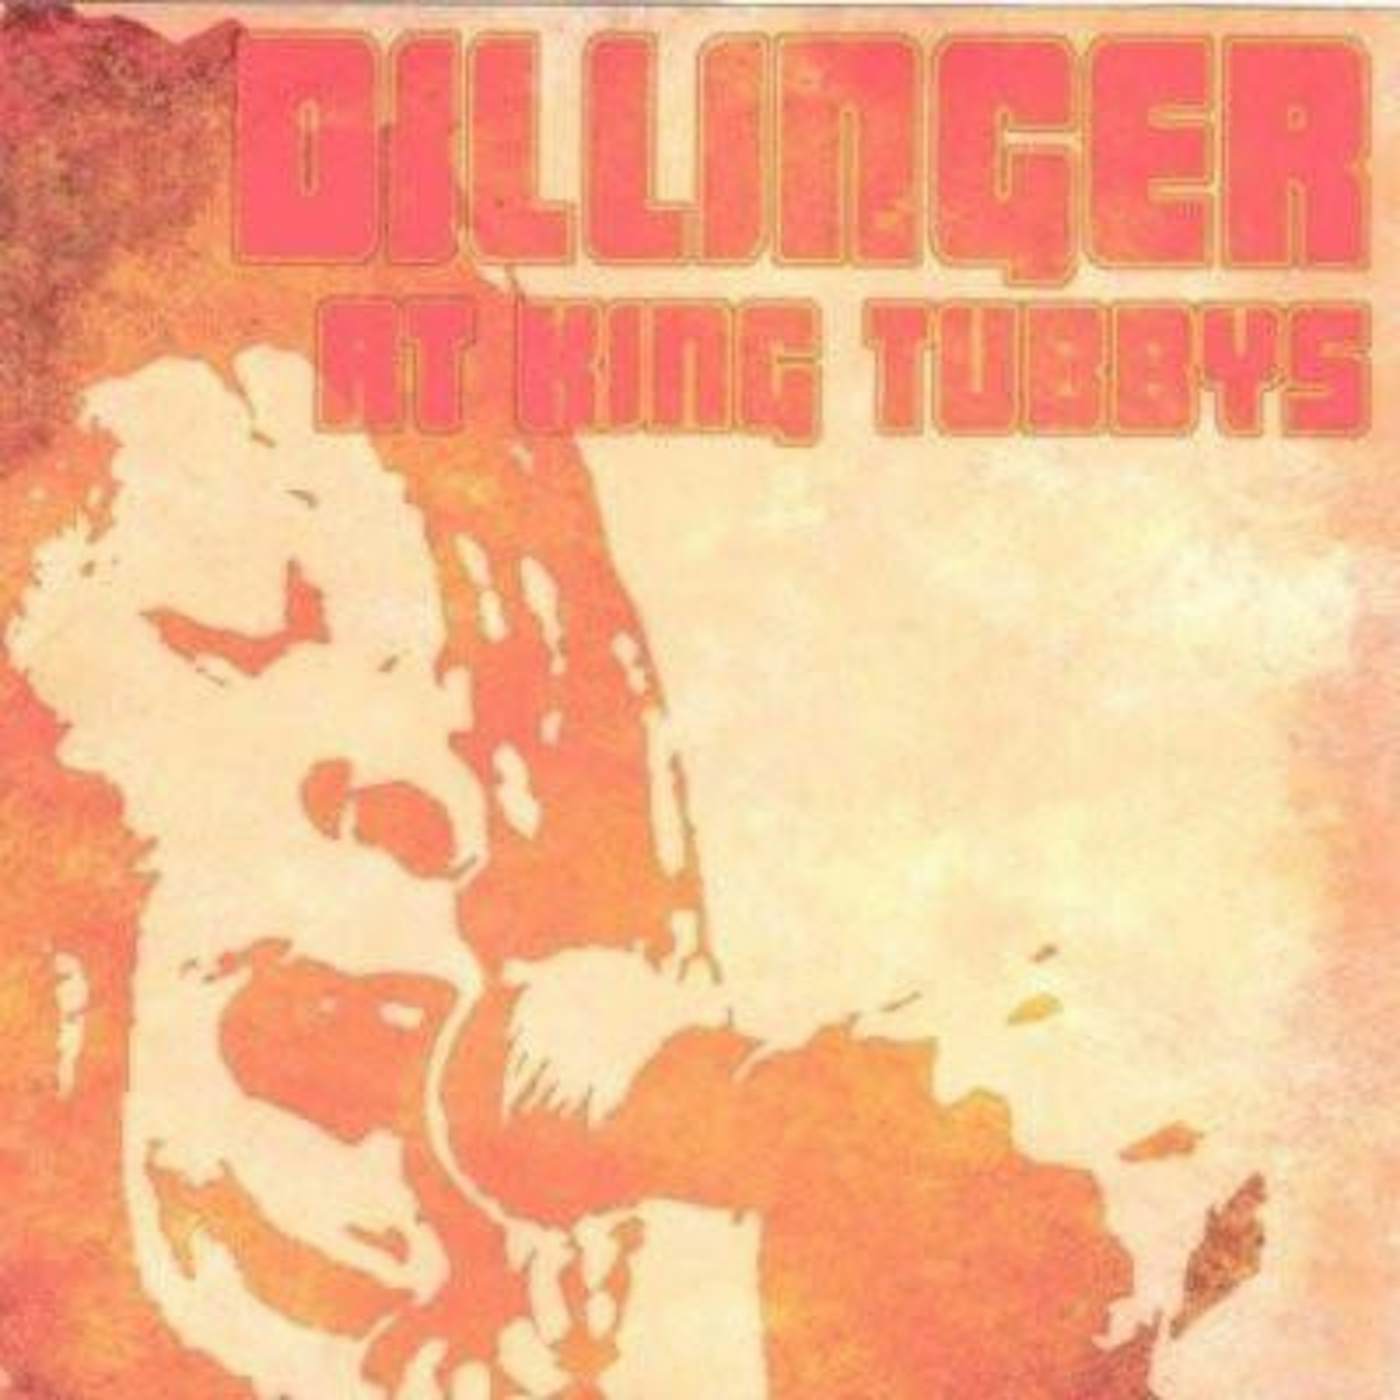 Dillinger AT KING TUBBYS CD